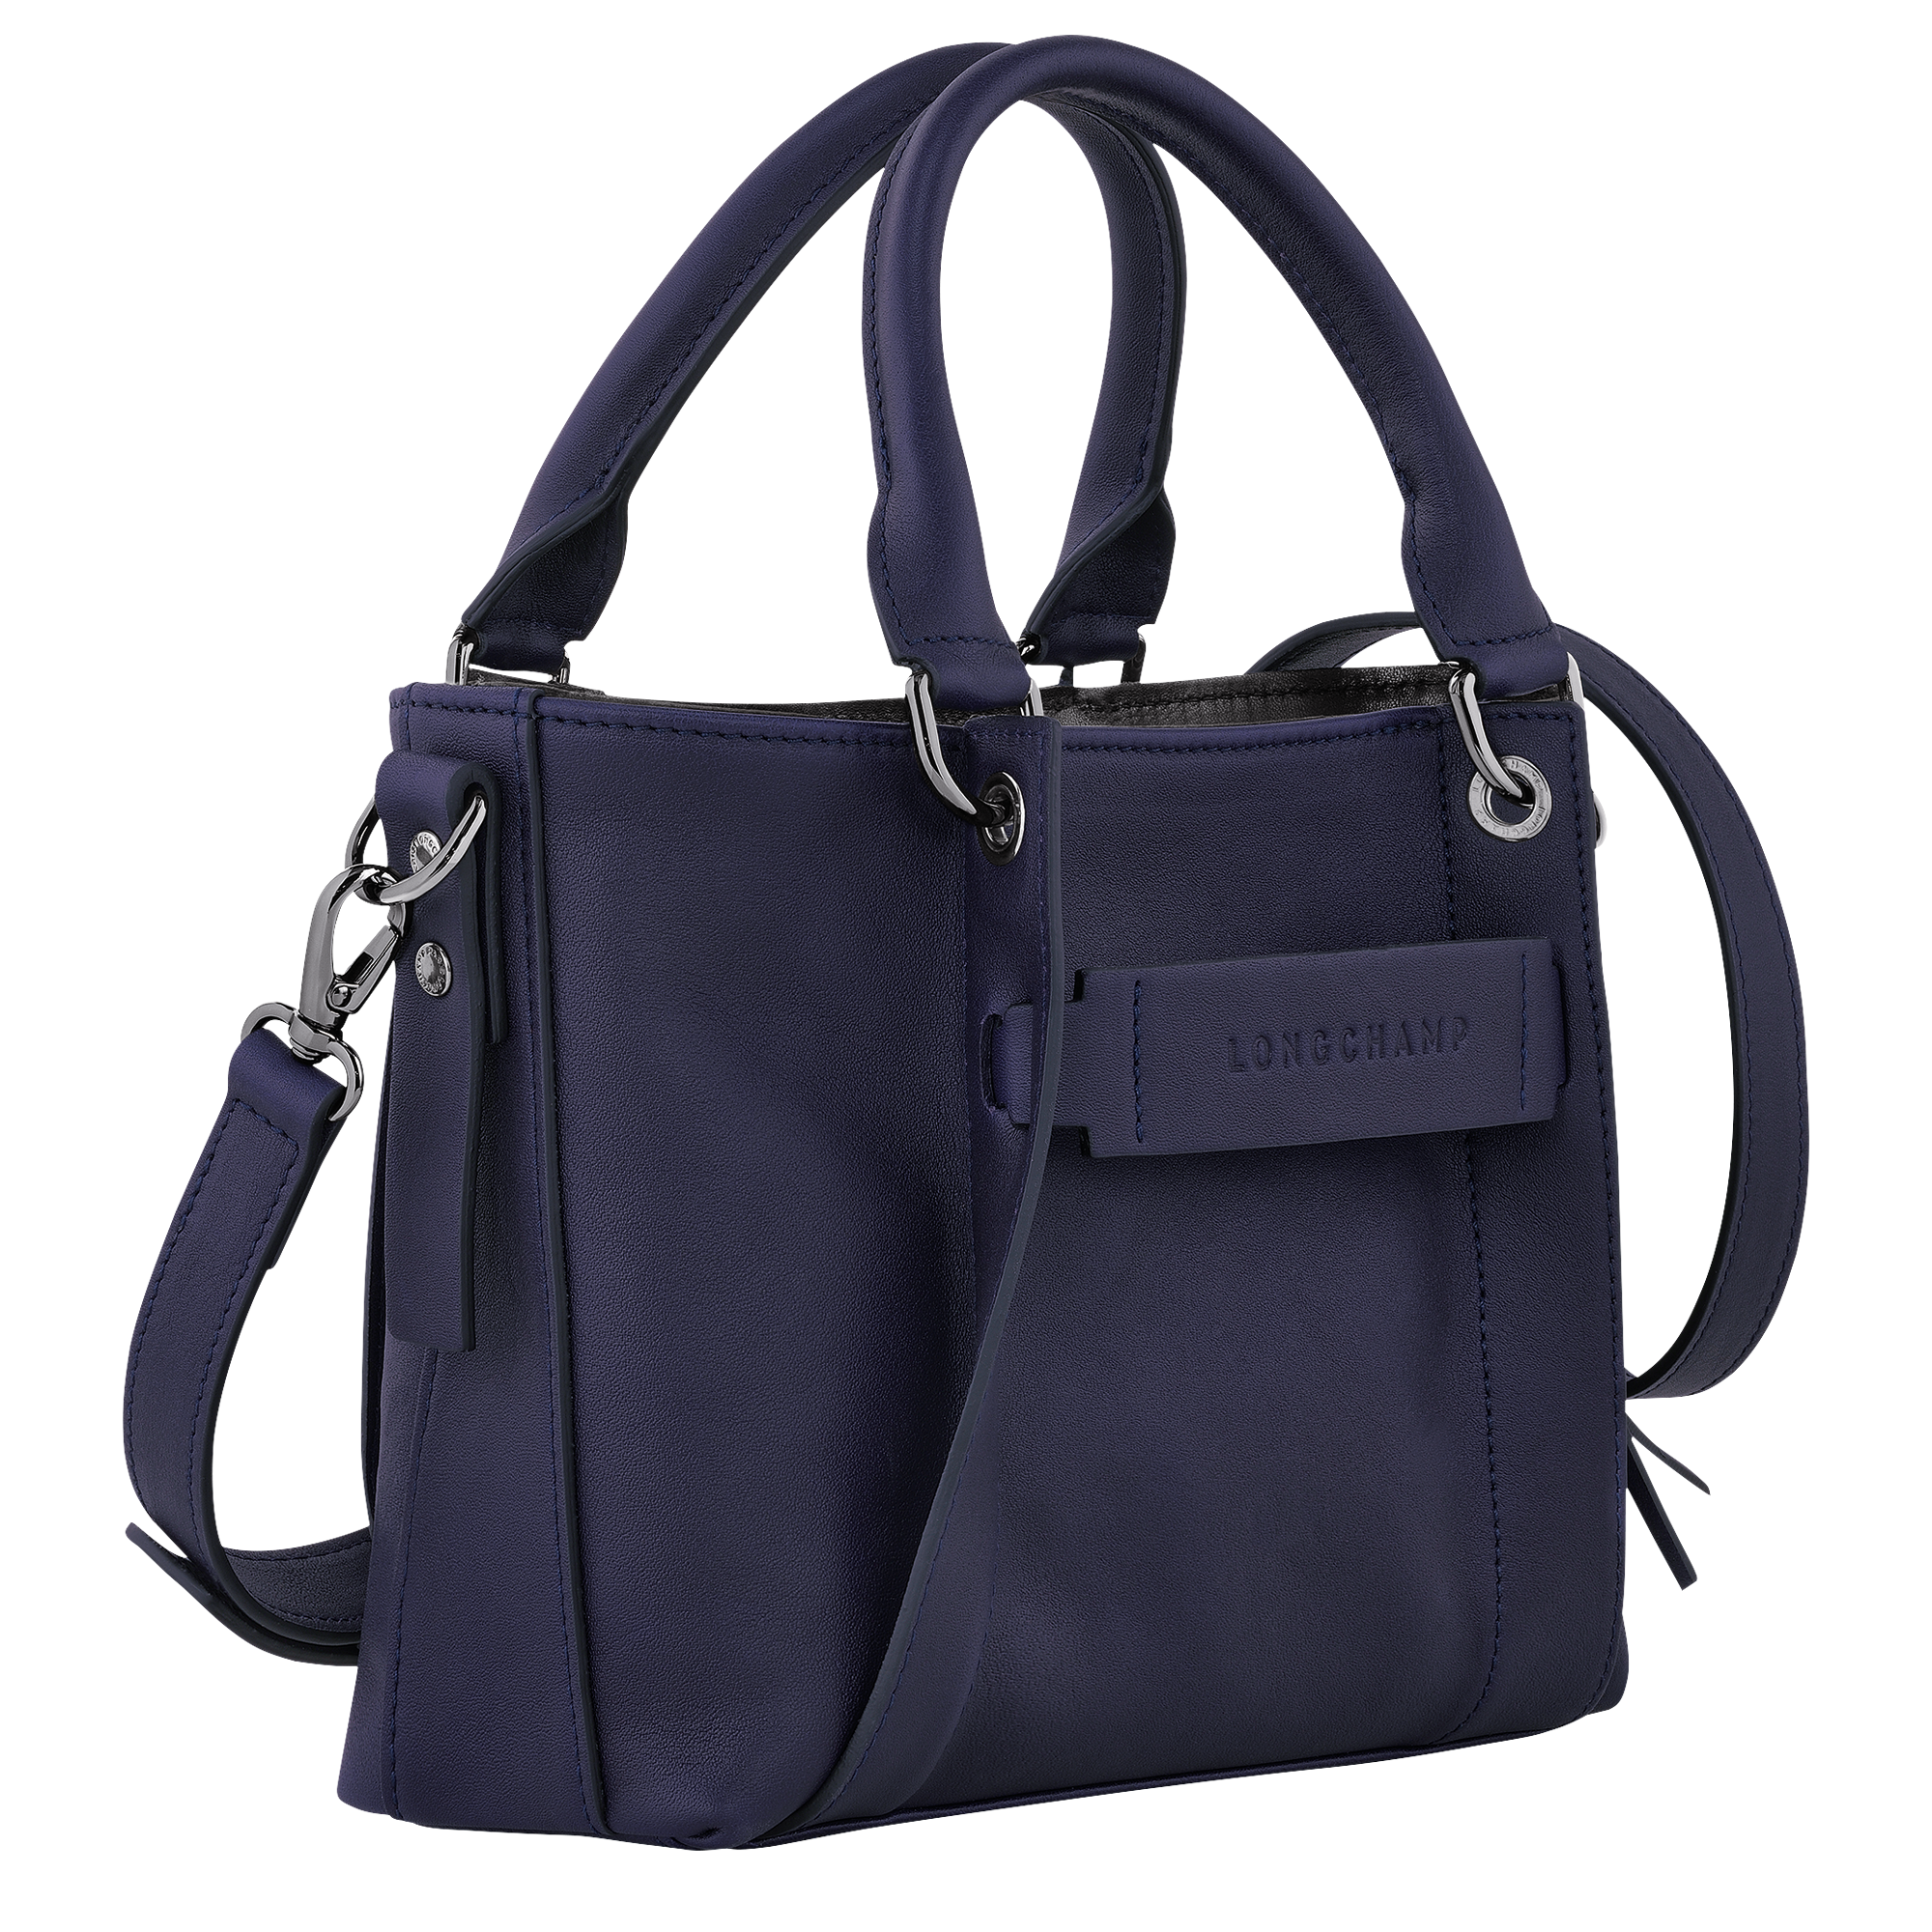 Longchamp 3D 手提包 S, 浆果紫